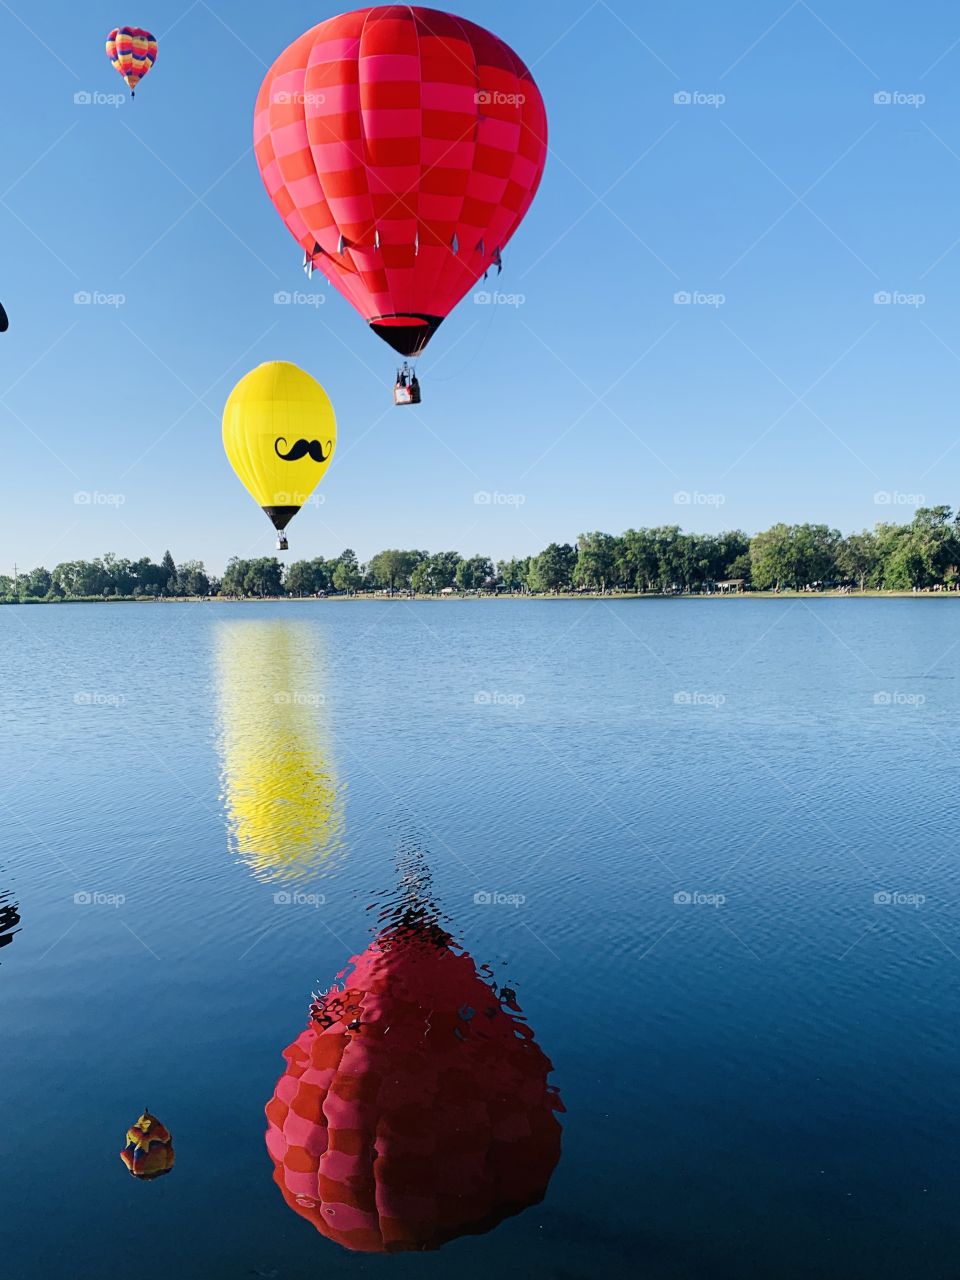 Hot Air Balloon Reflections 